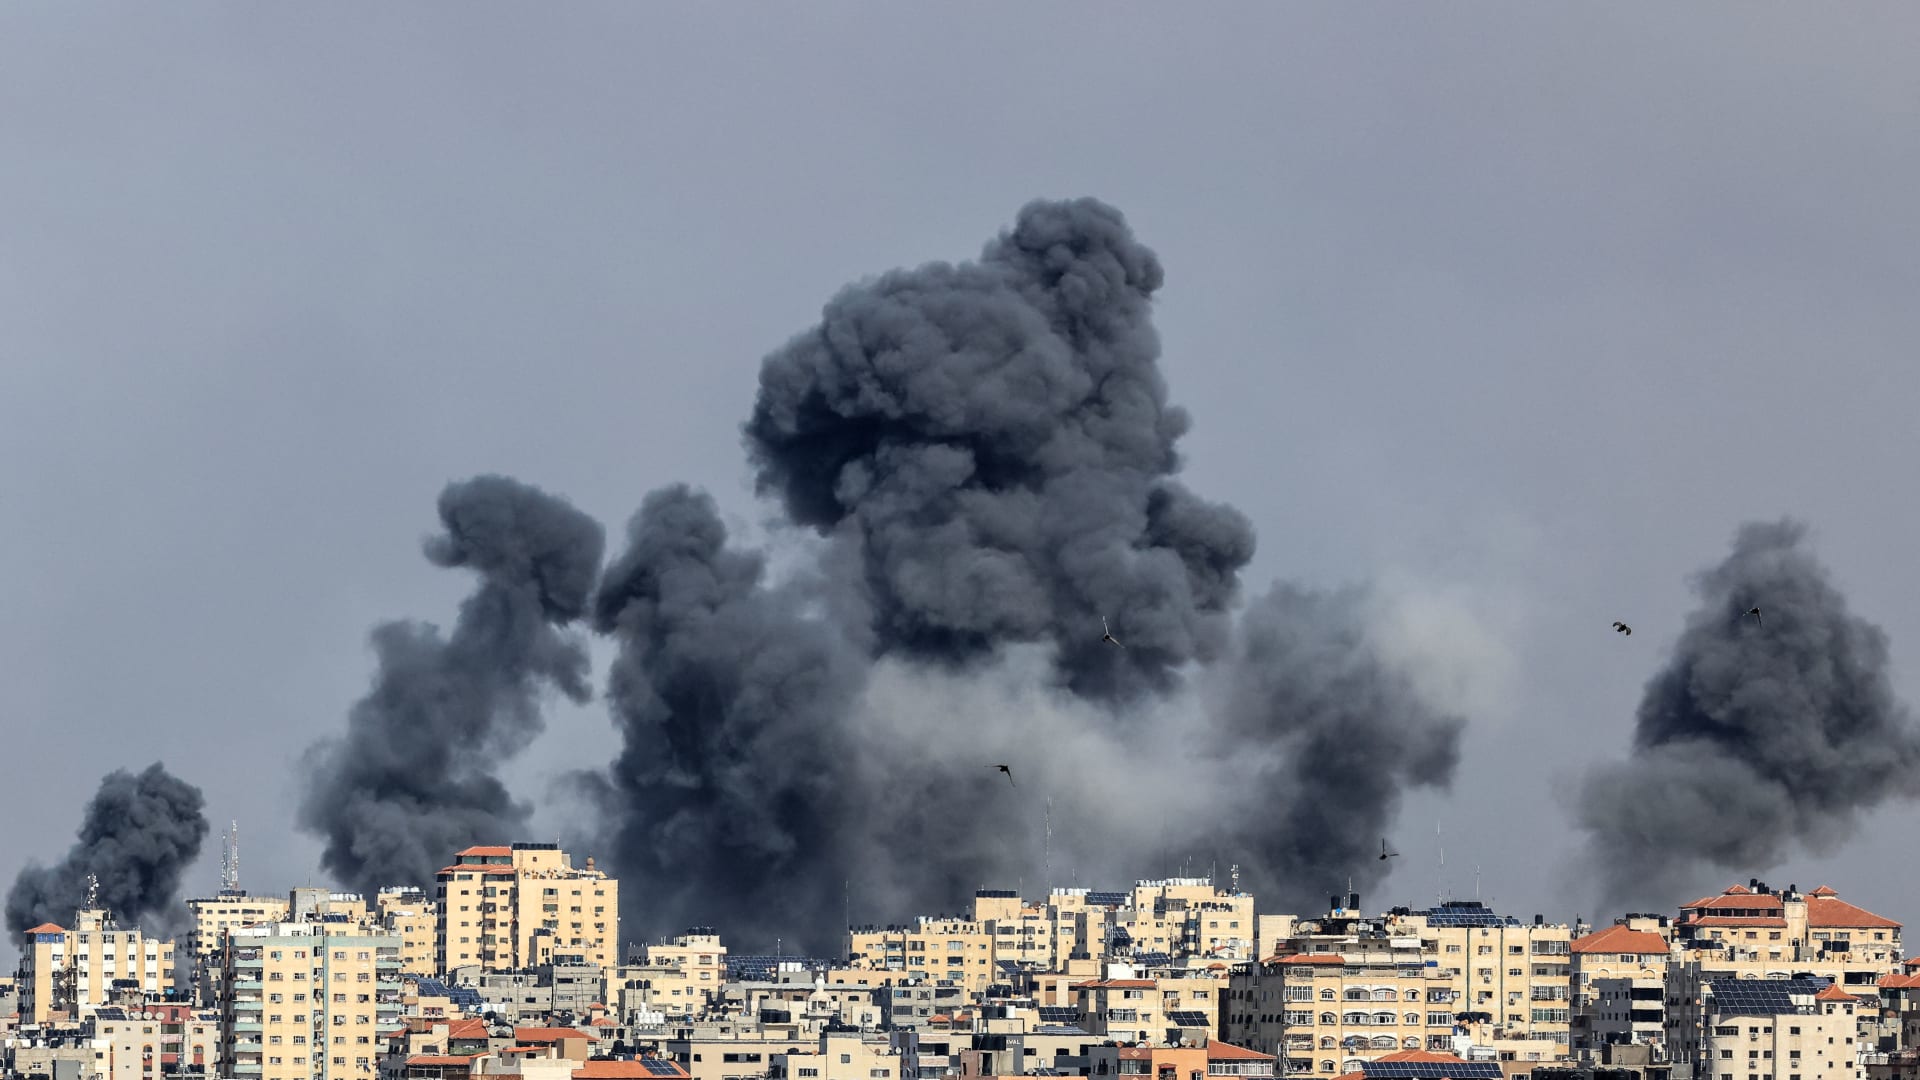 شاهد لحظة إطلاق وابل من الصواريخ من غزة باتجاه إسرائيل